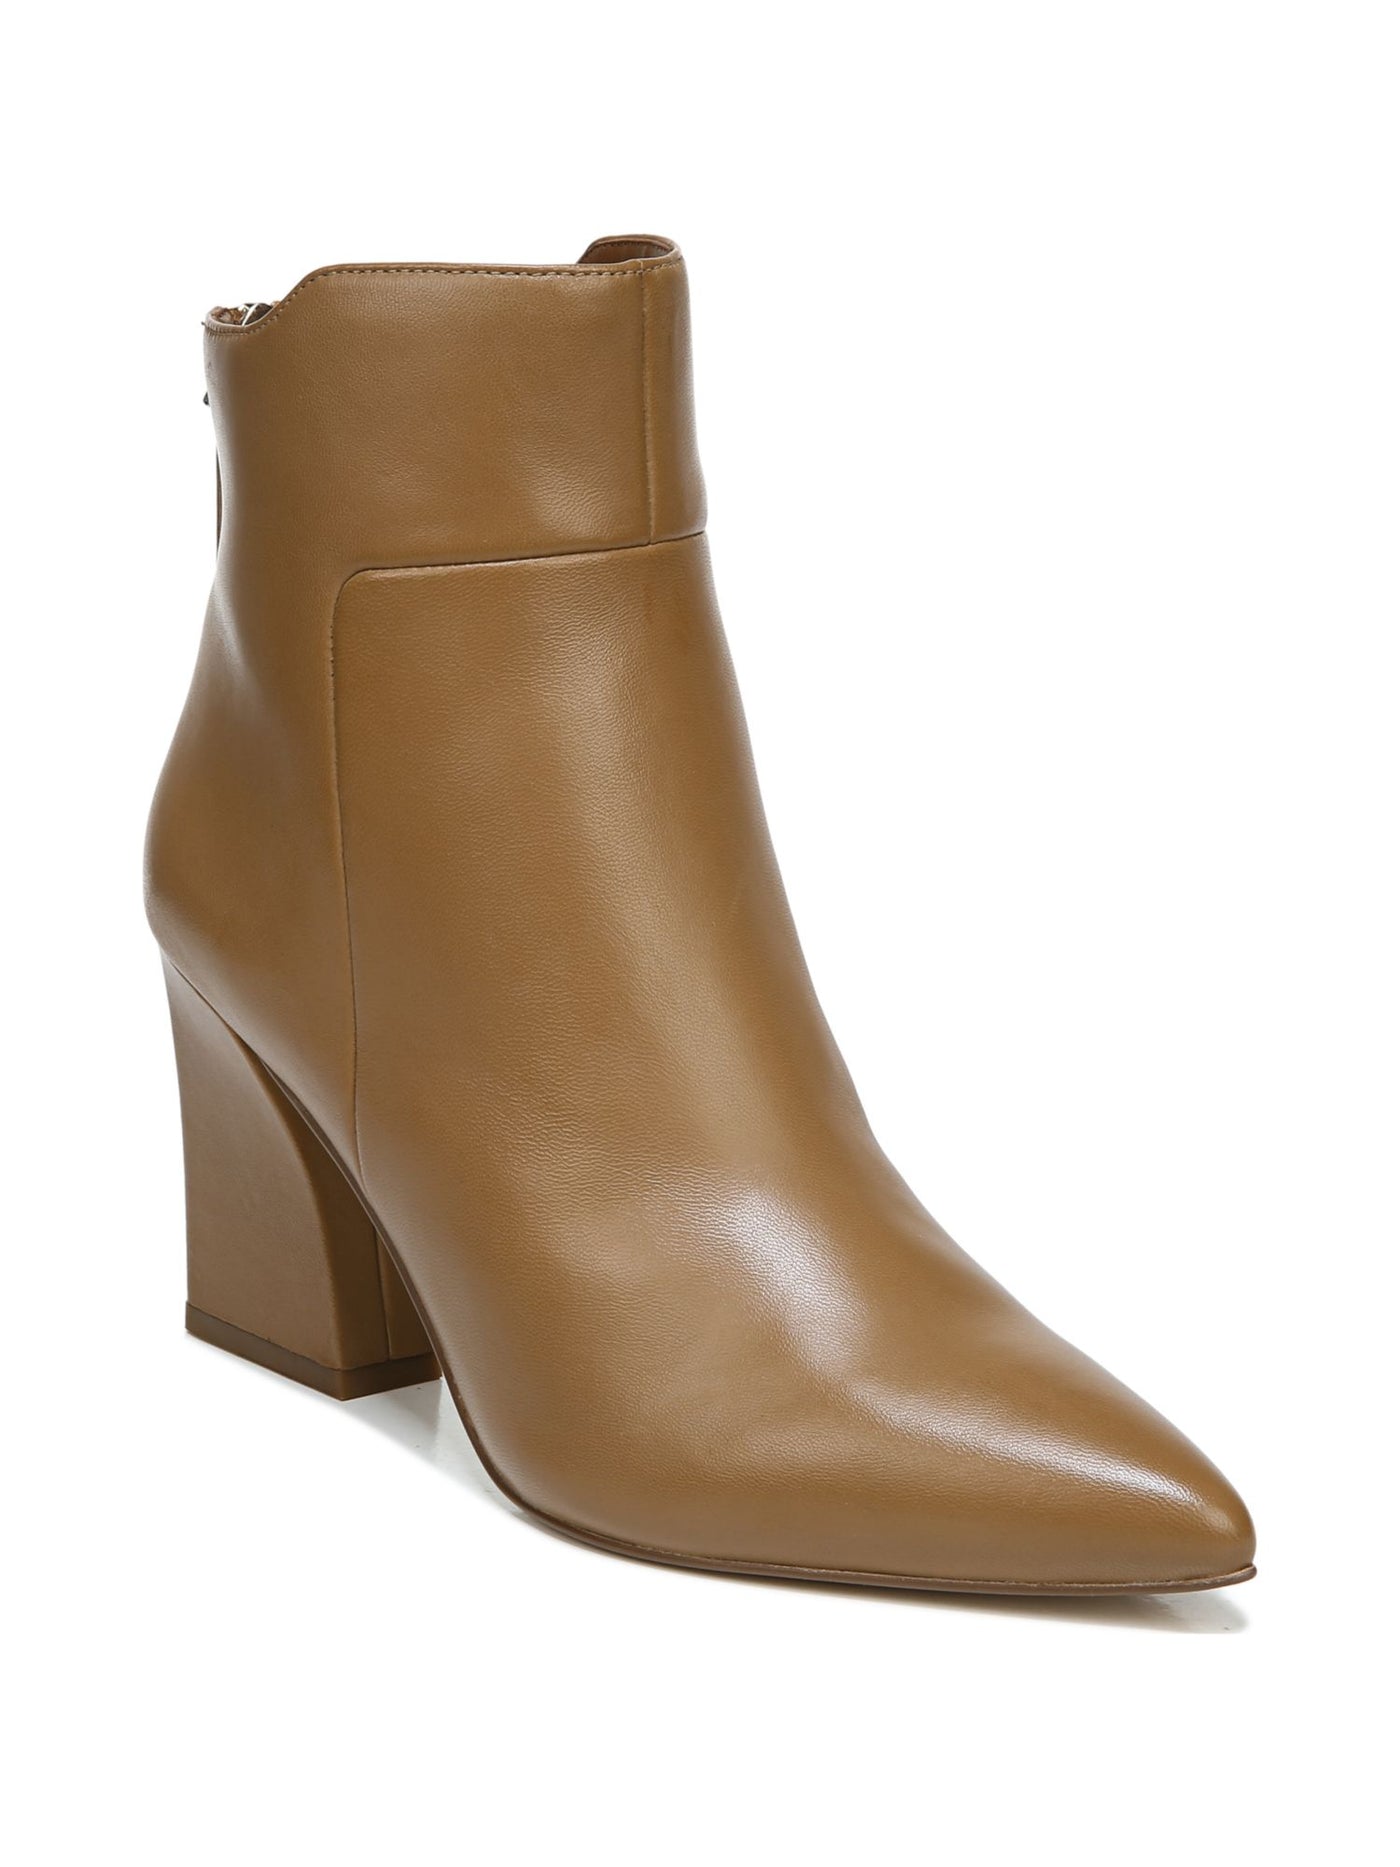 FRANCO SARTO Womens Brown Comfort Venture Pointed Toe Block Heel Zip-Up Leather Booties 7.5 M